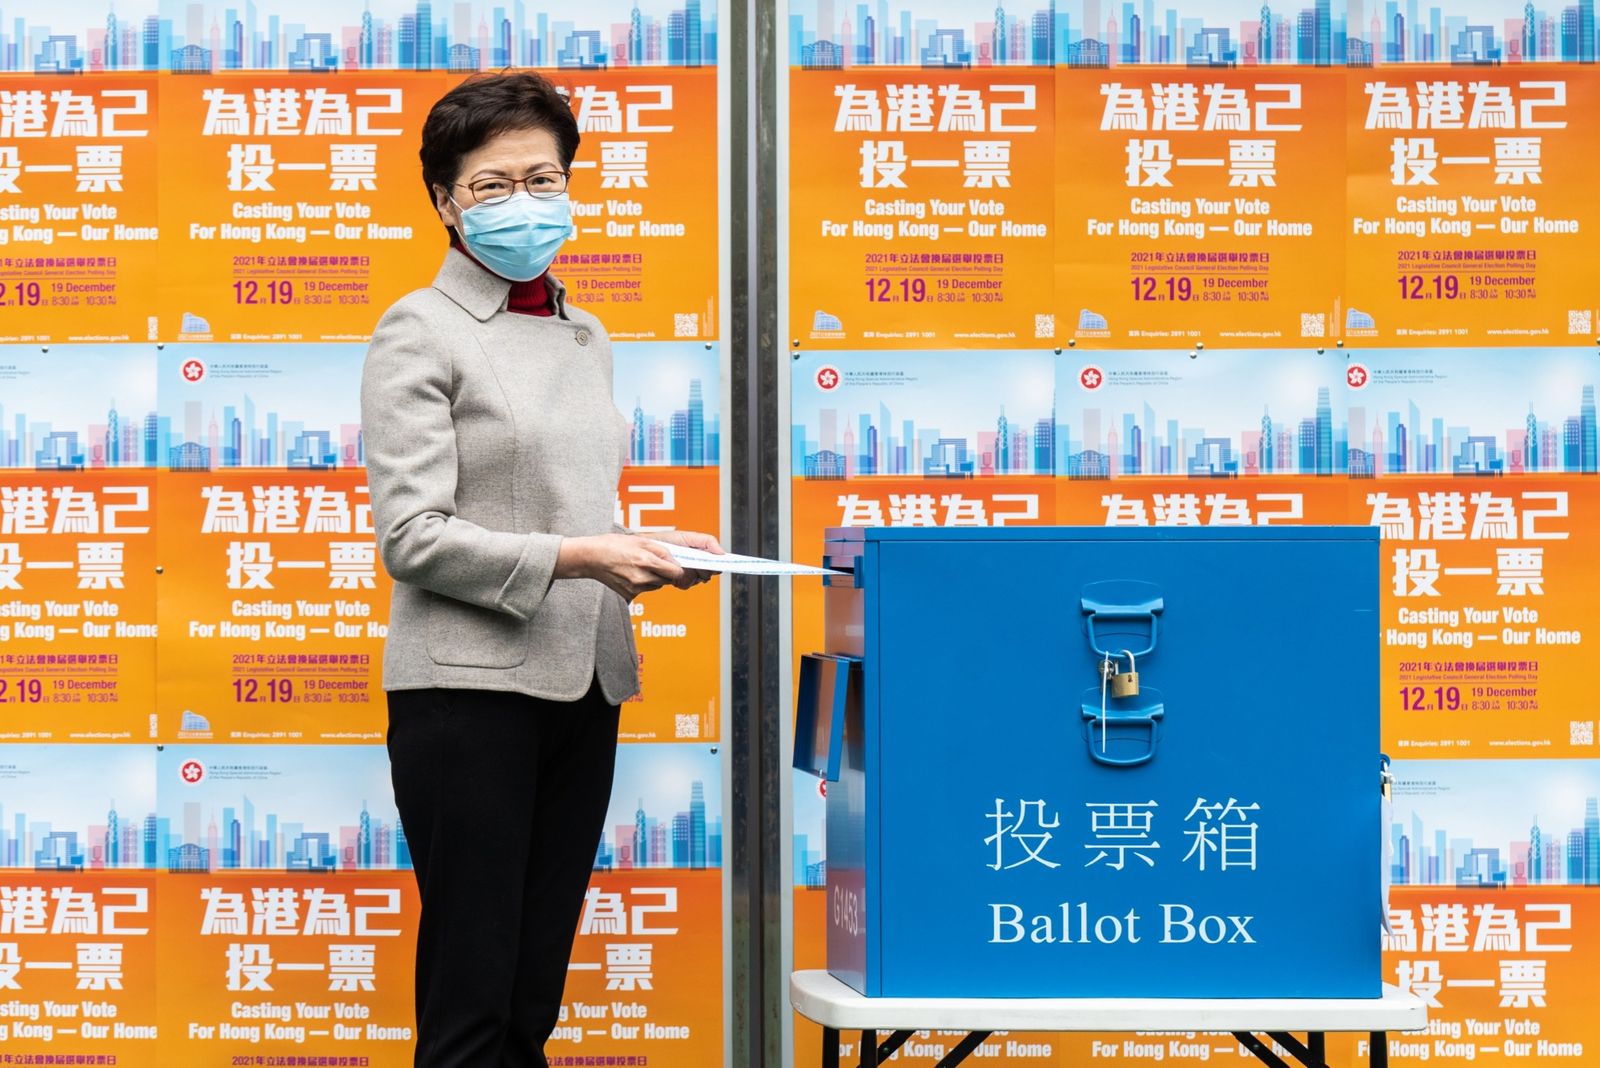 الرئيسة التنفيذية لهونج كونج كاري لام تدلي بصوتها في الانتخابات - 19 ديسمبر 2021 - Bloomberg